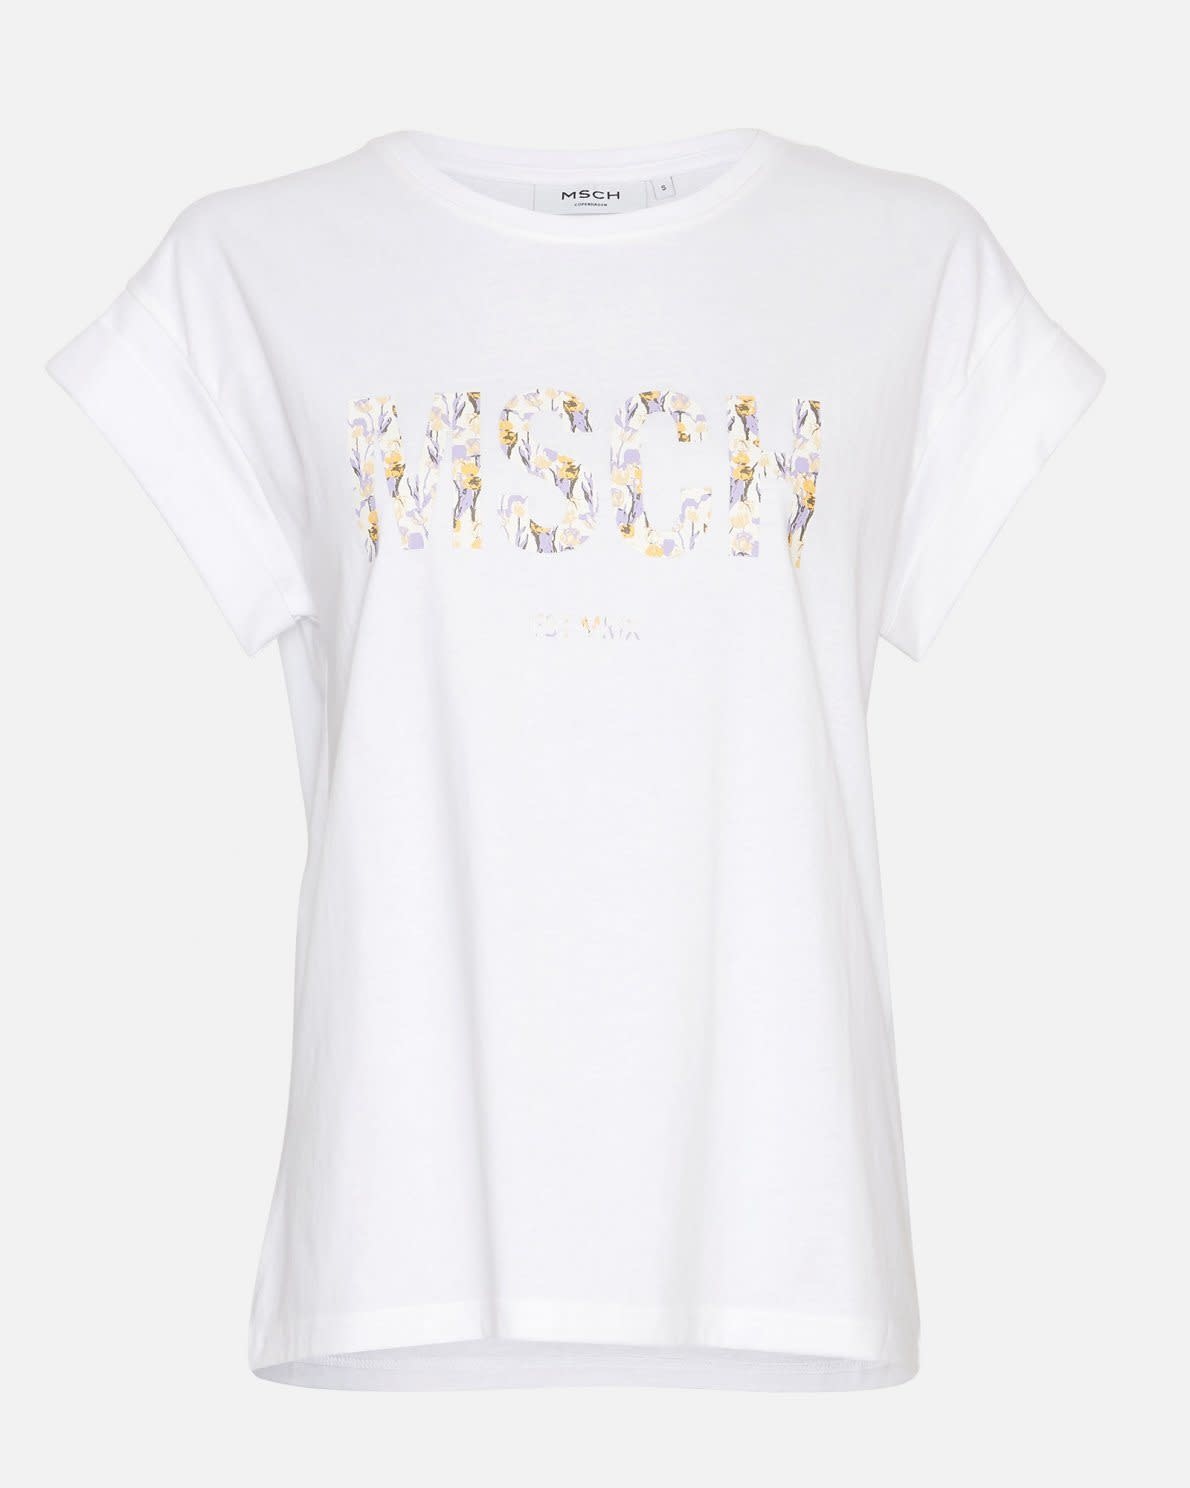 Boren Tien jaar royalty Moss Copenhagen Shirt Alva MSCH – white berin print - 't Haagje